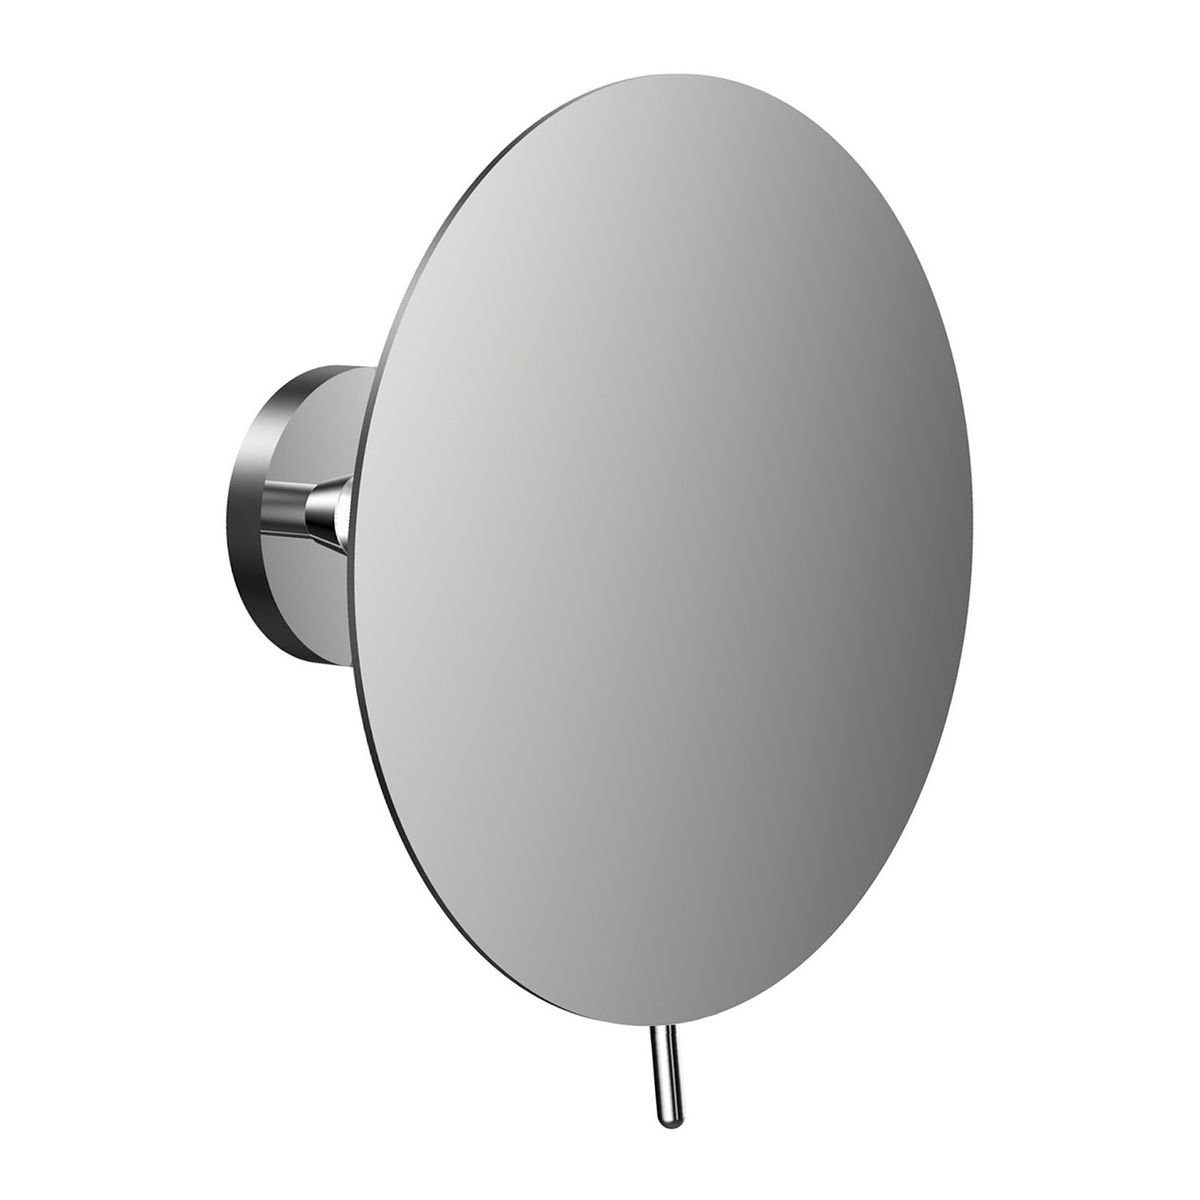 Frasco Kosmetikspiegel Wand-Kosmetikspiegel, Ø 190 mm, 3-fach